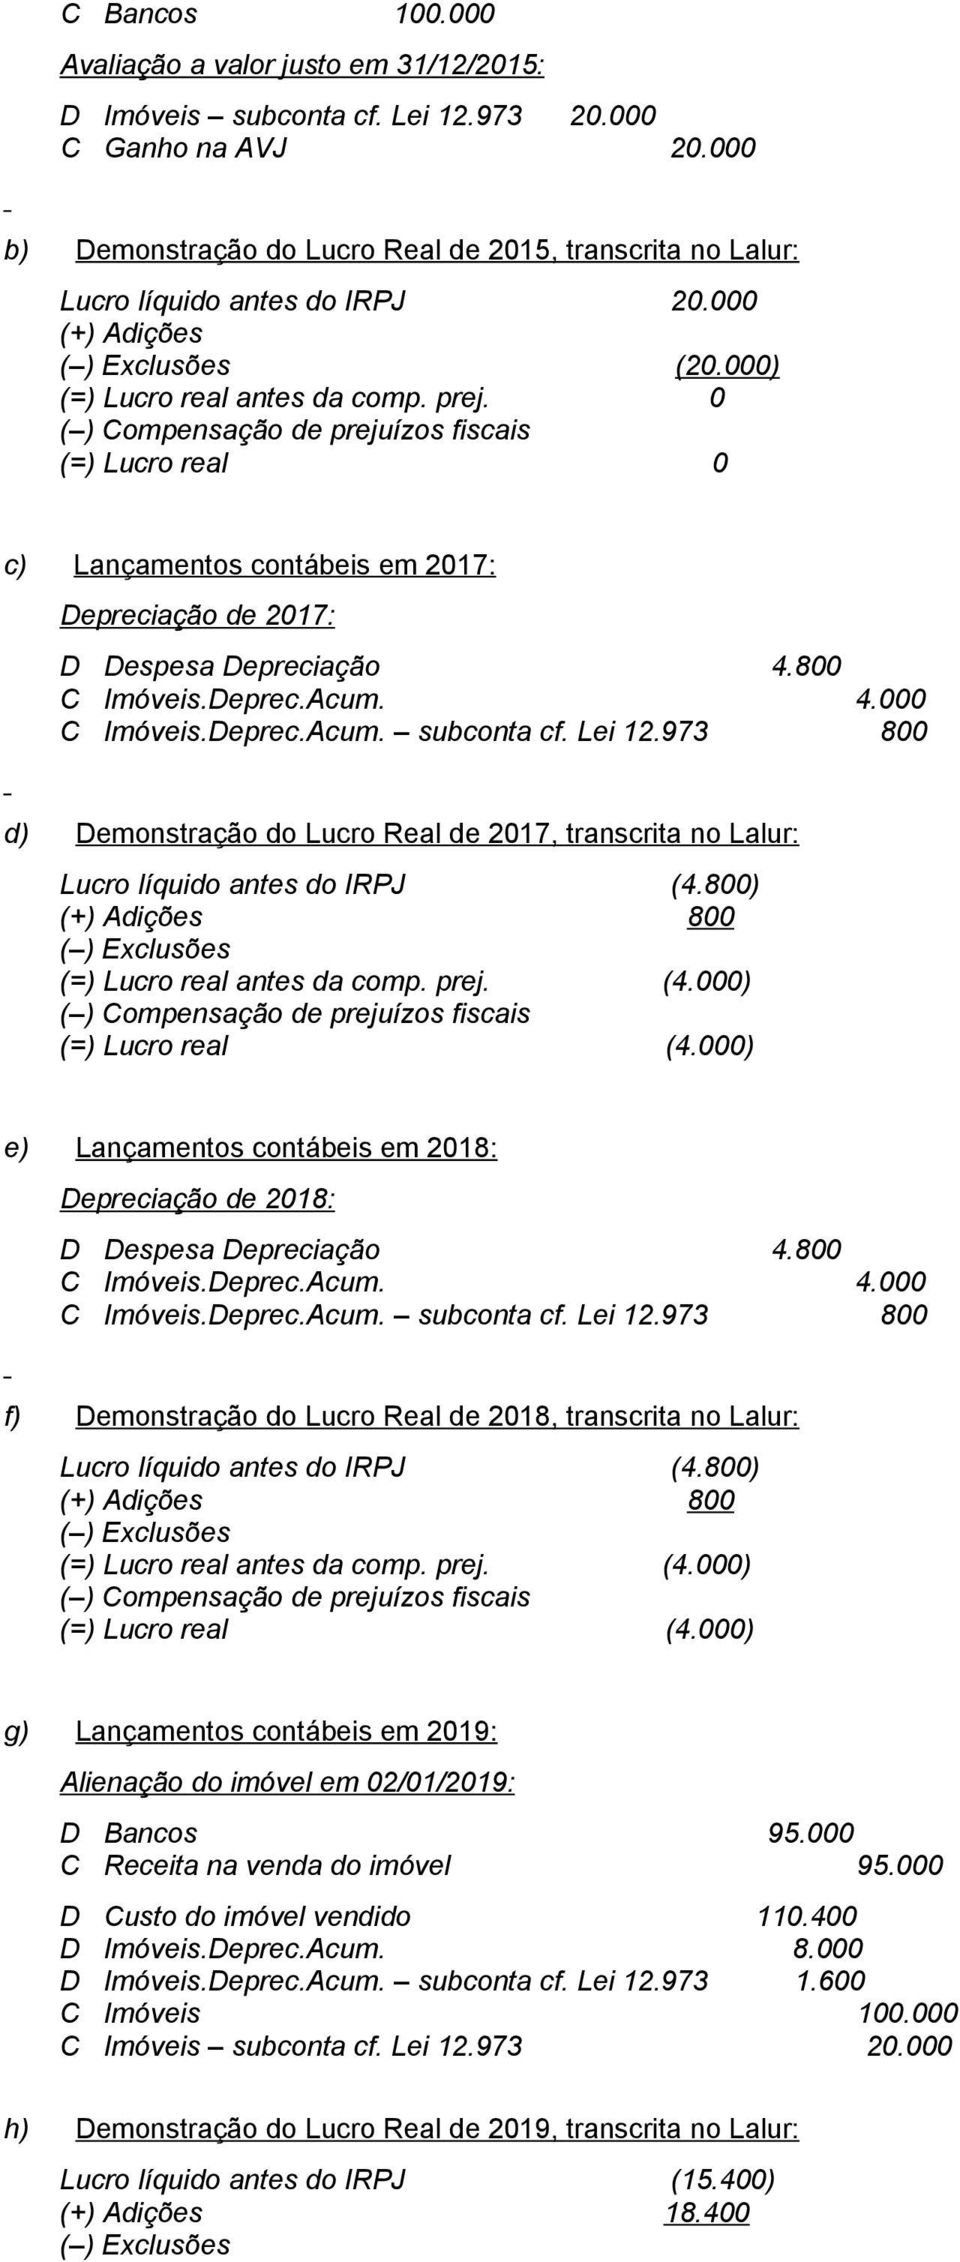 973 800 d) Demonstração do Lucro Real de 2017, transcrita no Lalur: Lucro líquido antes do IRPJ (4.800) 800 (=) Lucro real antes da comp. prej. (4.000) (=) Lucro real (4.